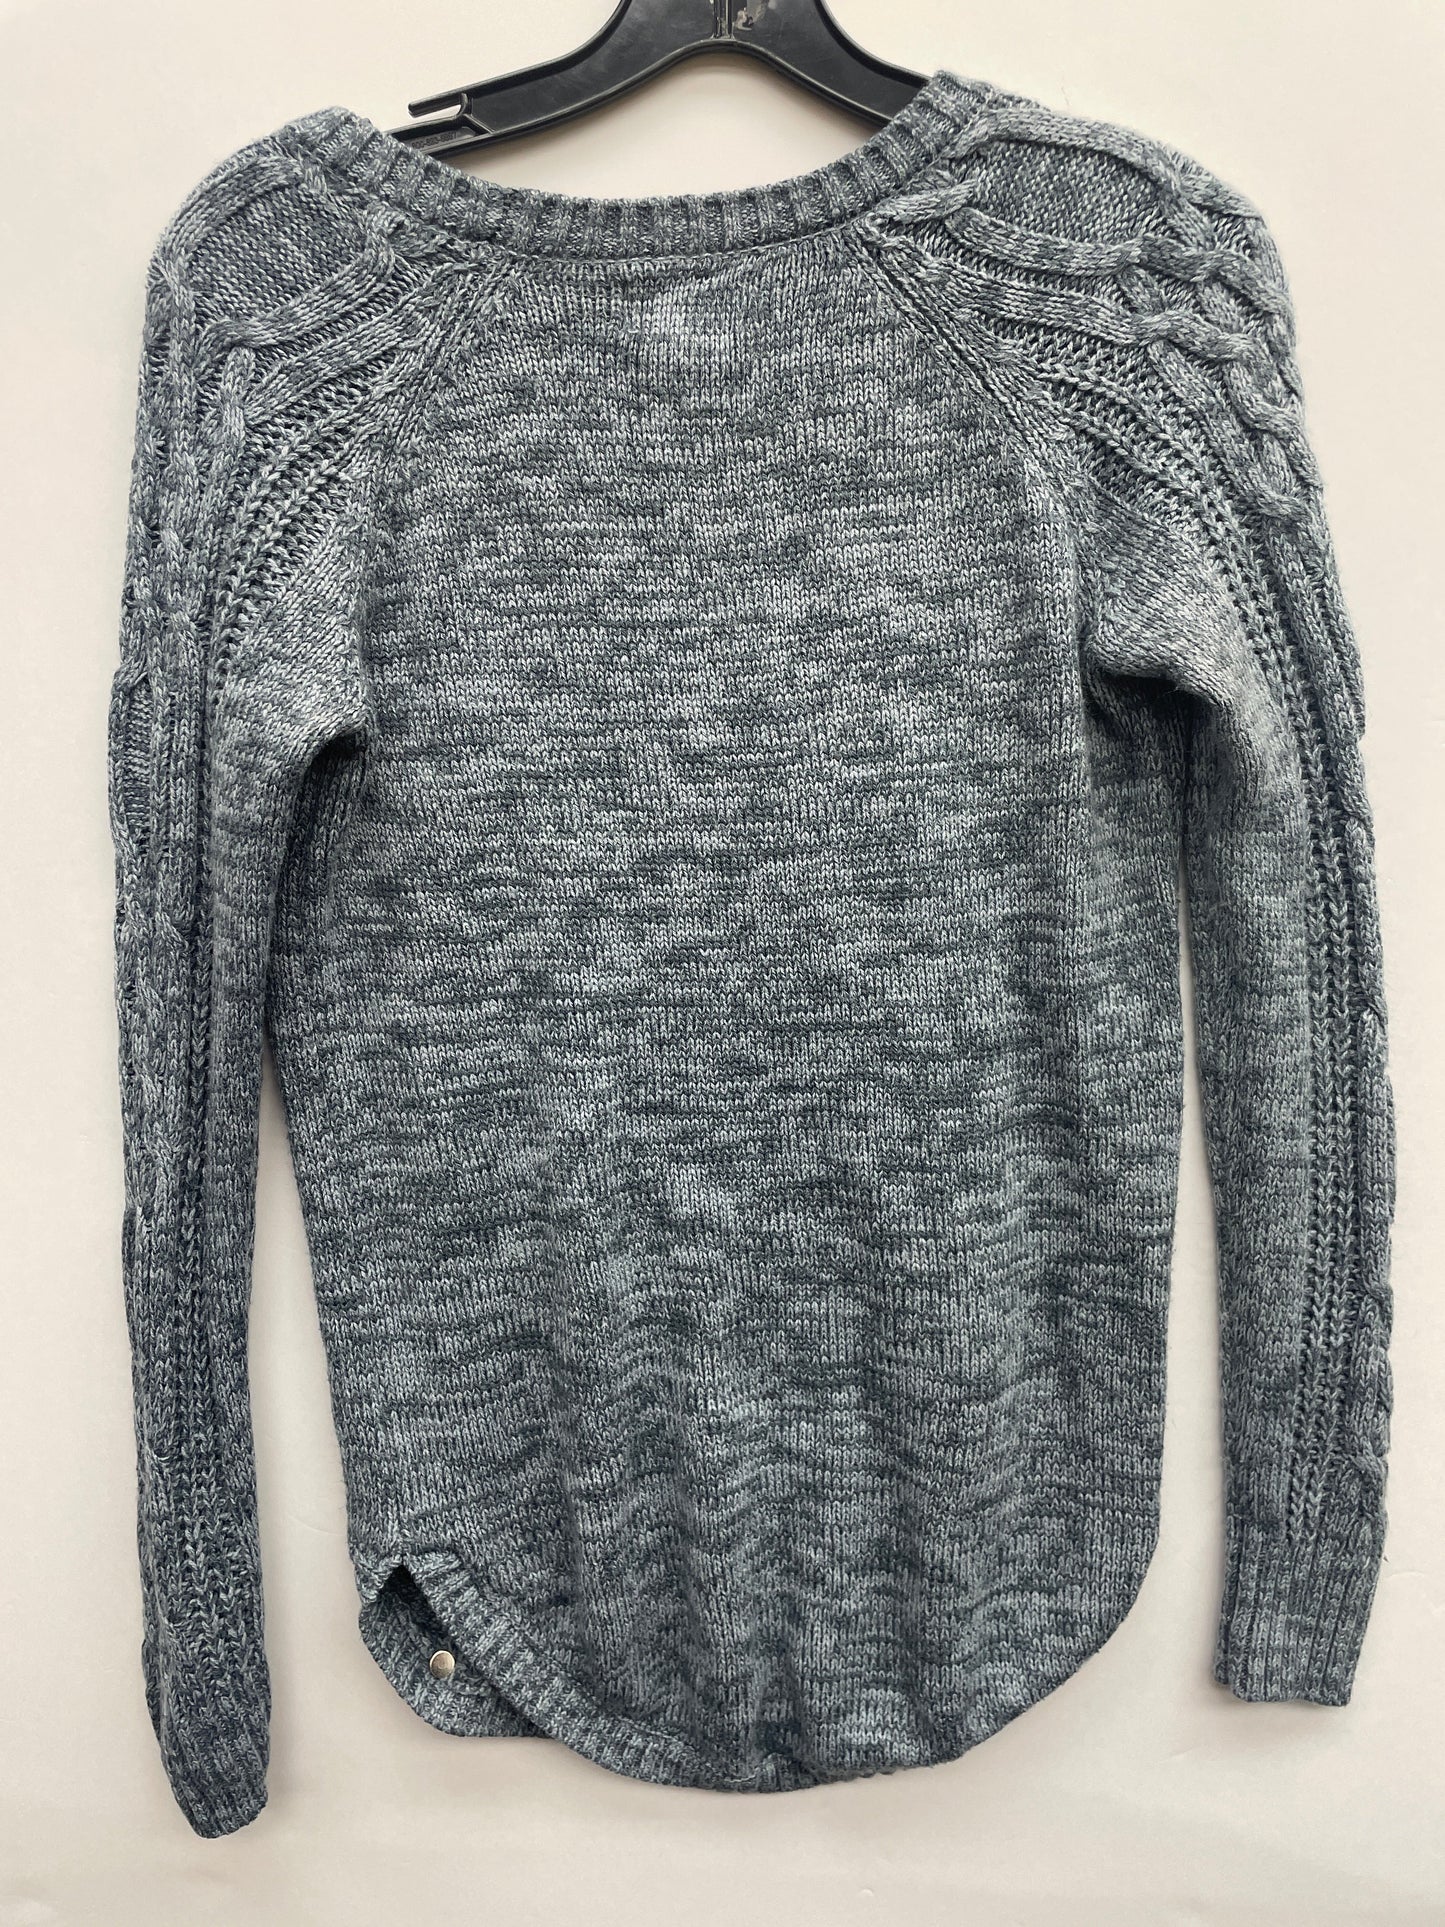 Sweater By Arizona  Size: M